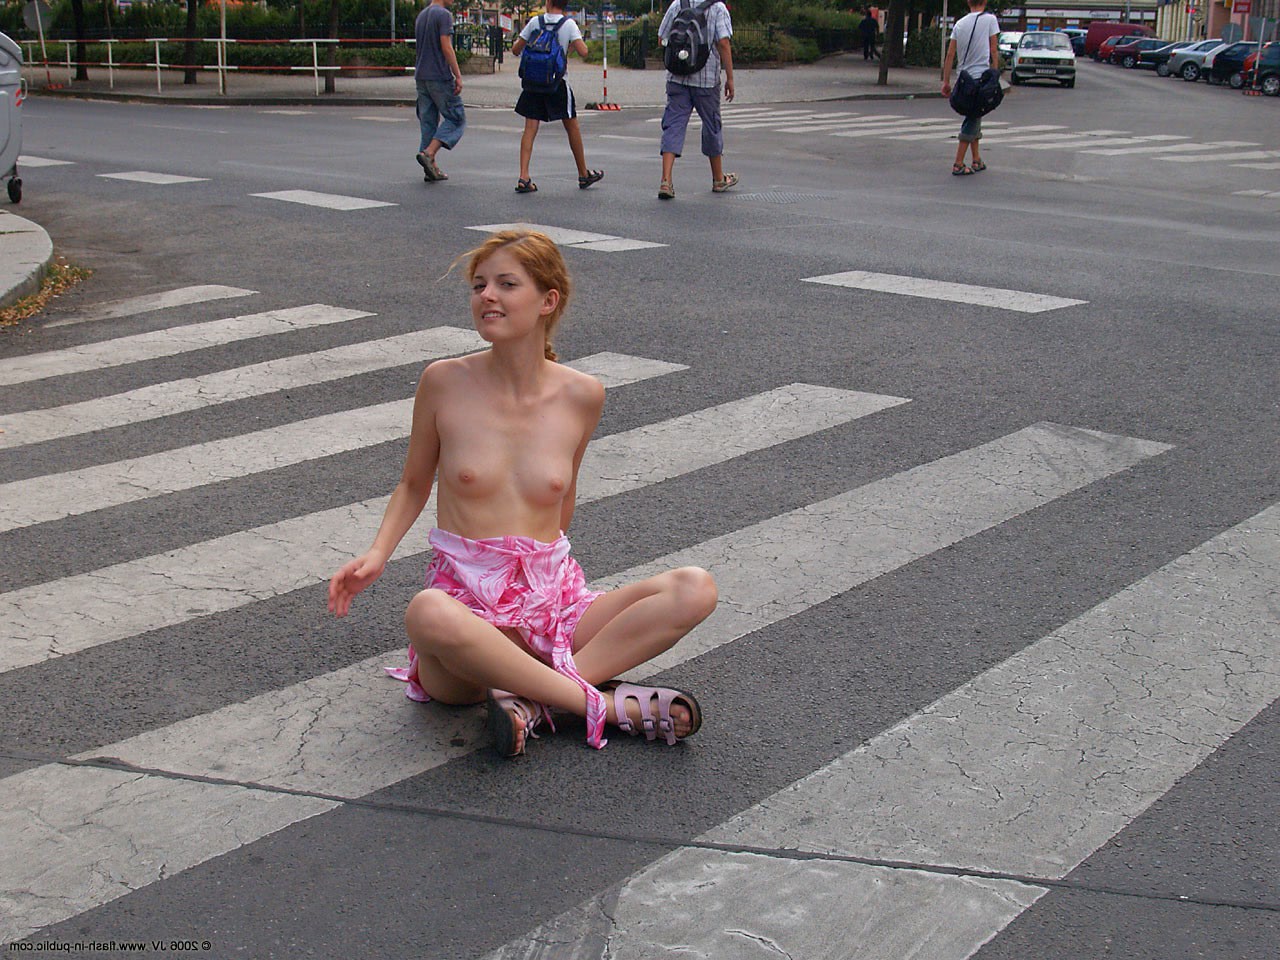 pictures public nude amateur upskirt no panties vol